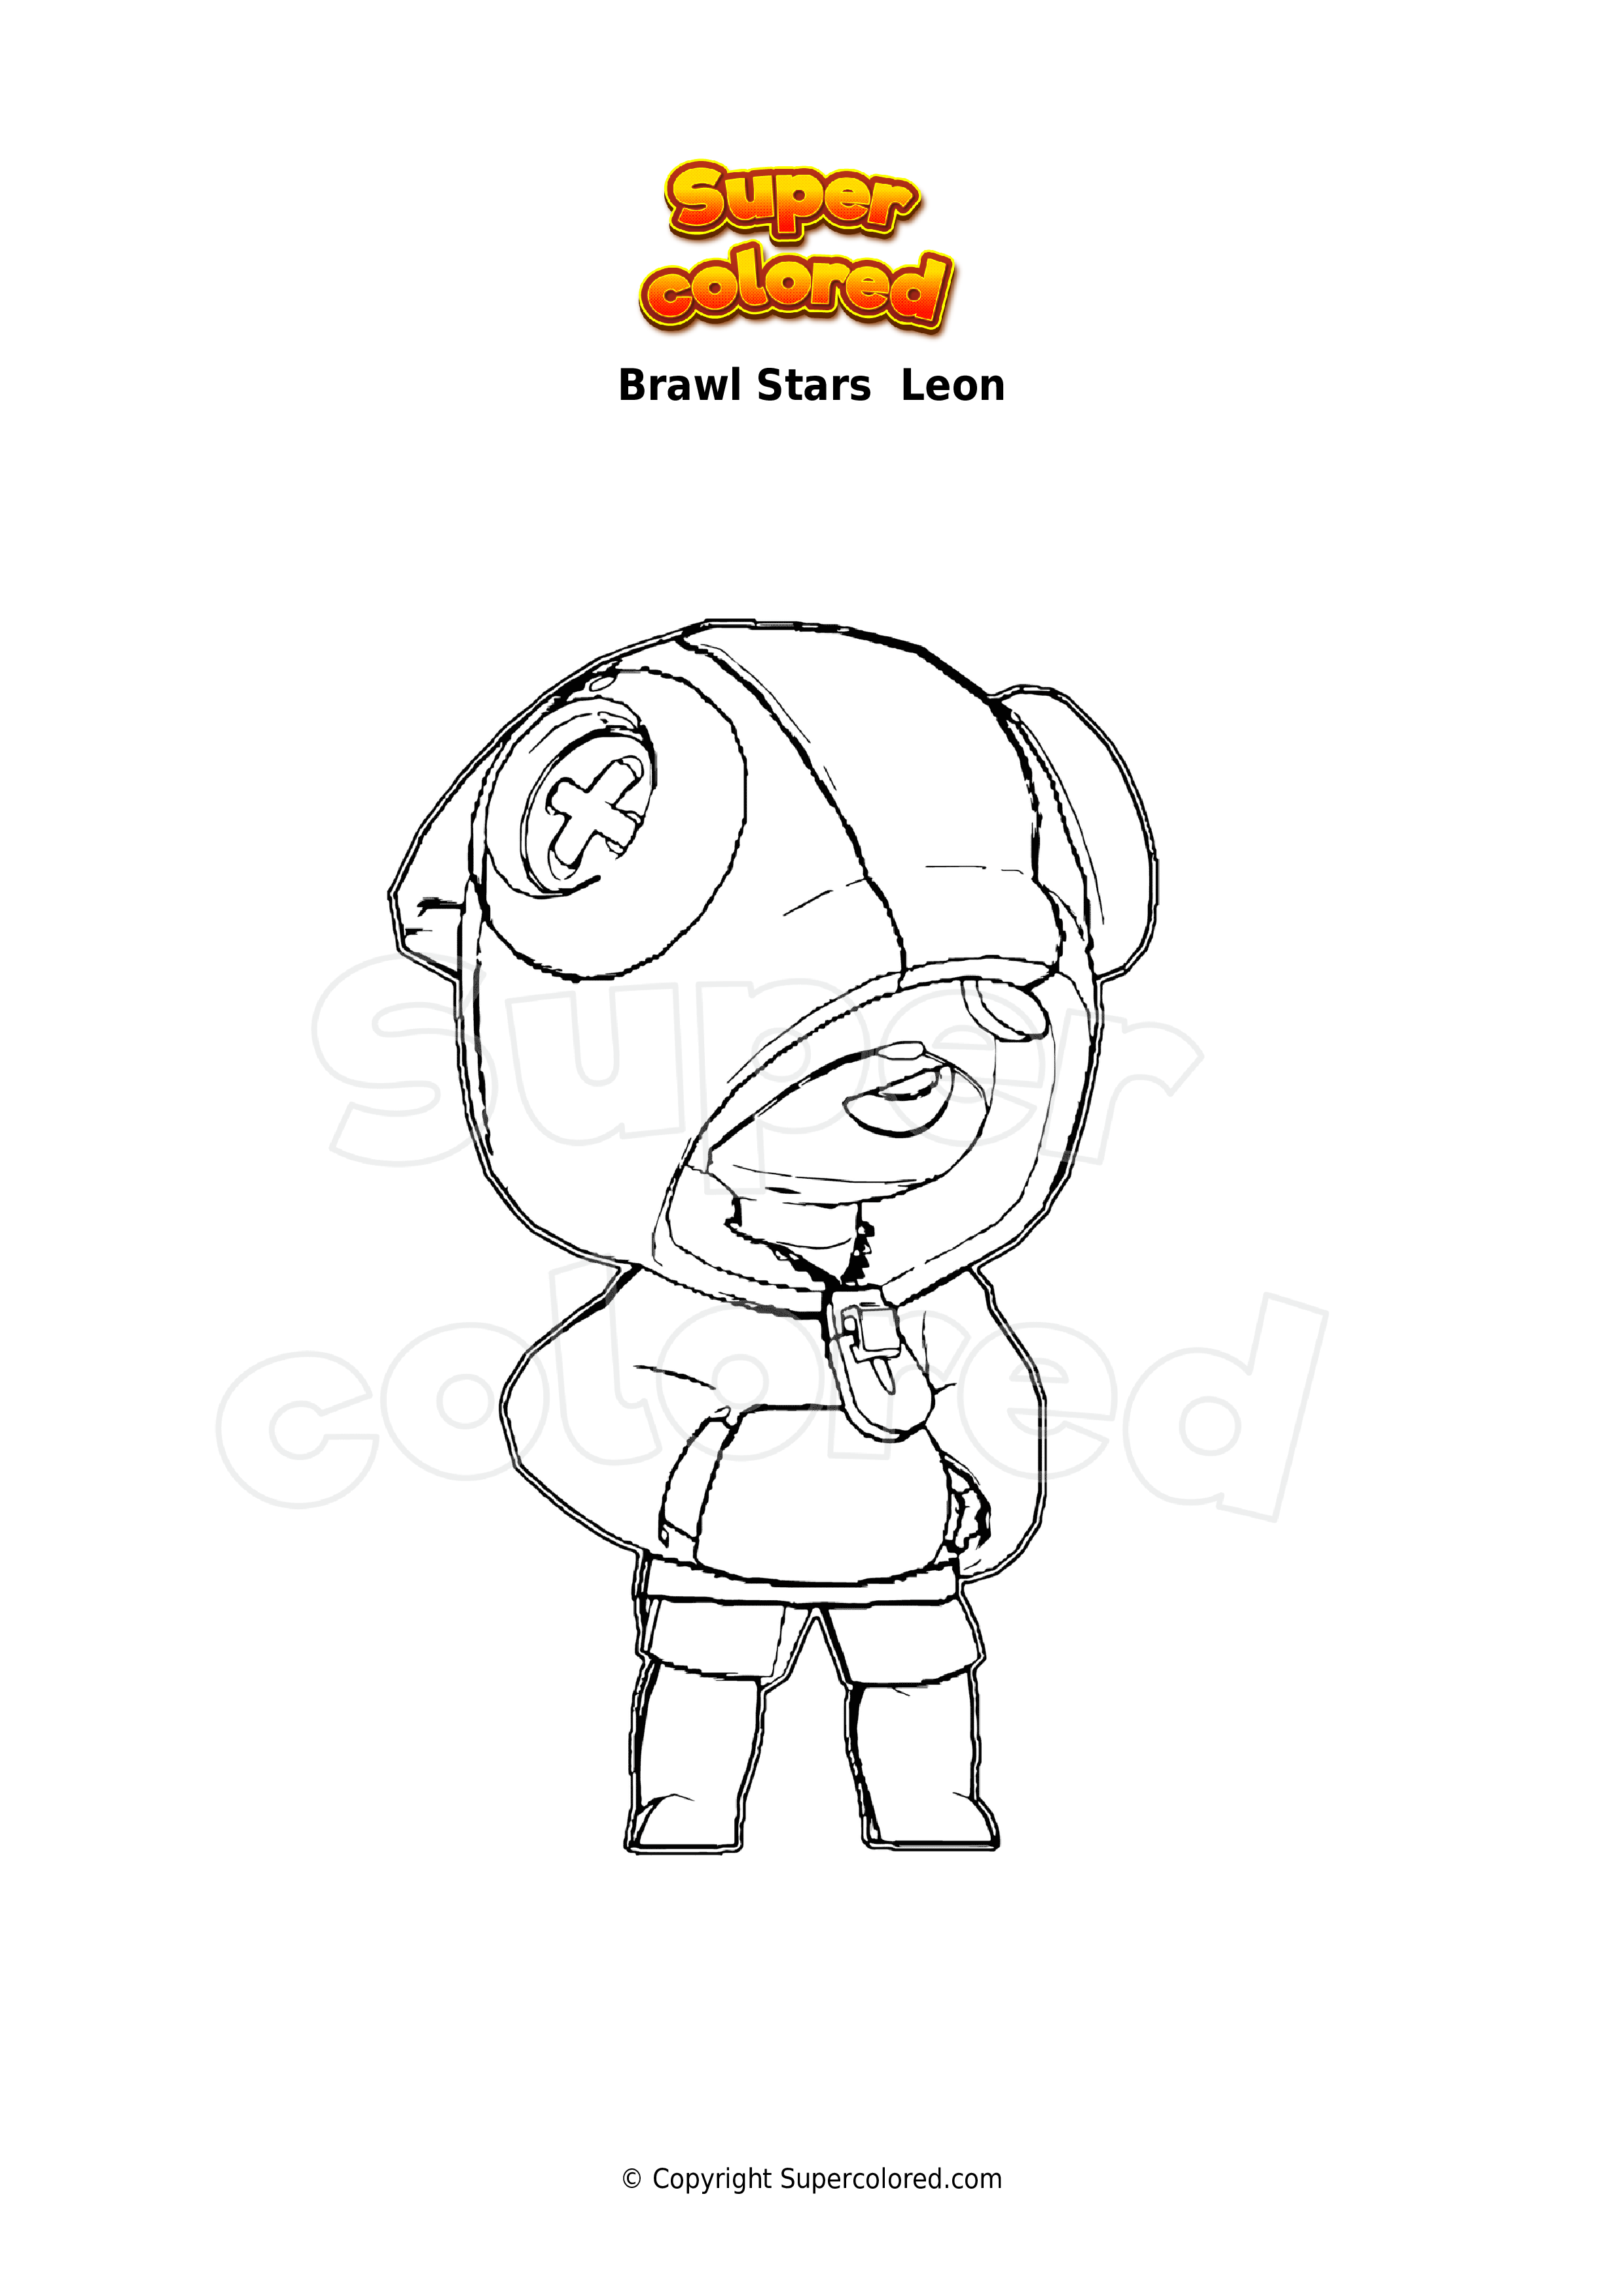 Disegno Da Colorare Brawl Stars Leon Supercolored Com - disegni da colorare brawl stars leon